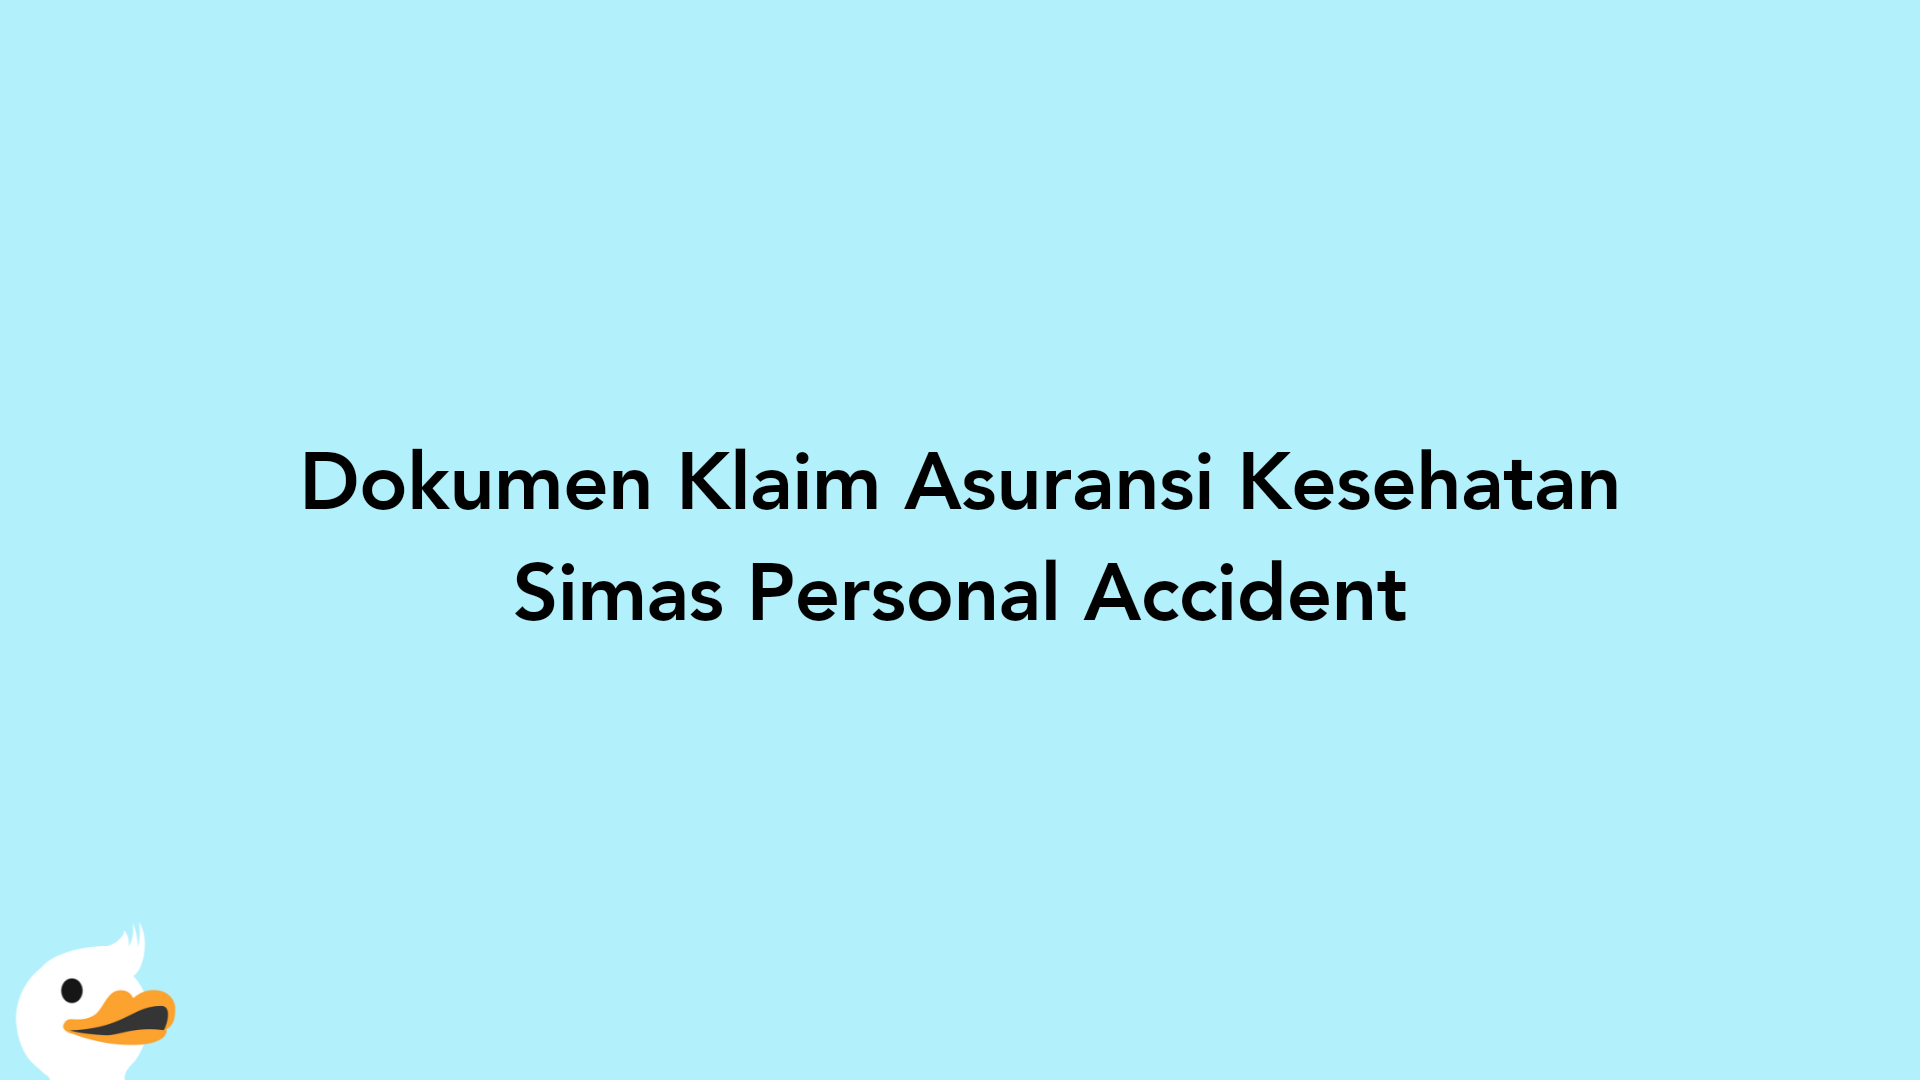 Dokumen Klaim Asuransi Kesehatan Simas Personal Accident